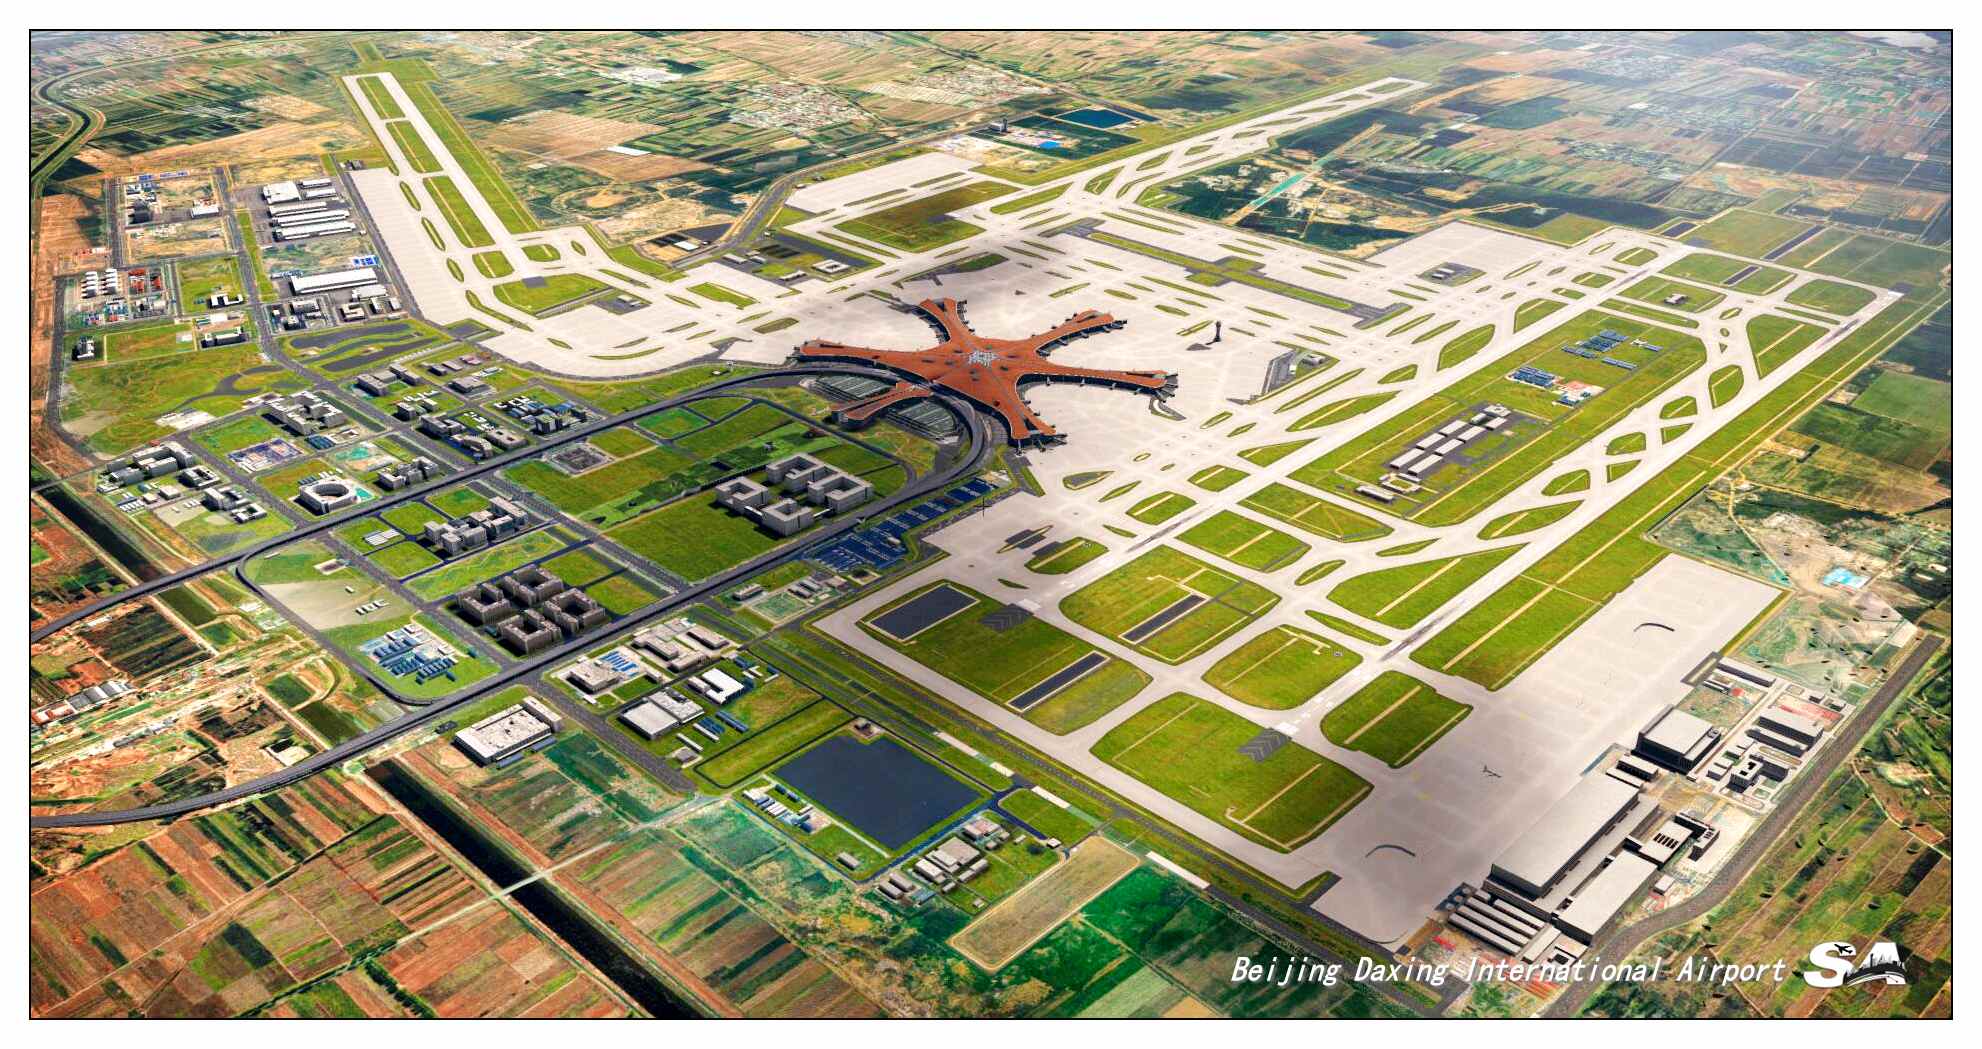 【X-Plane】ZBAD北京大兴国际机场-正式发布-4298 